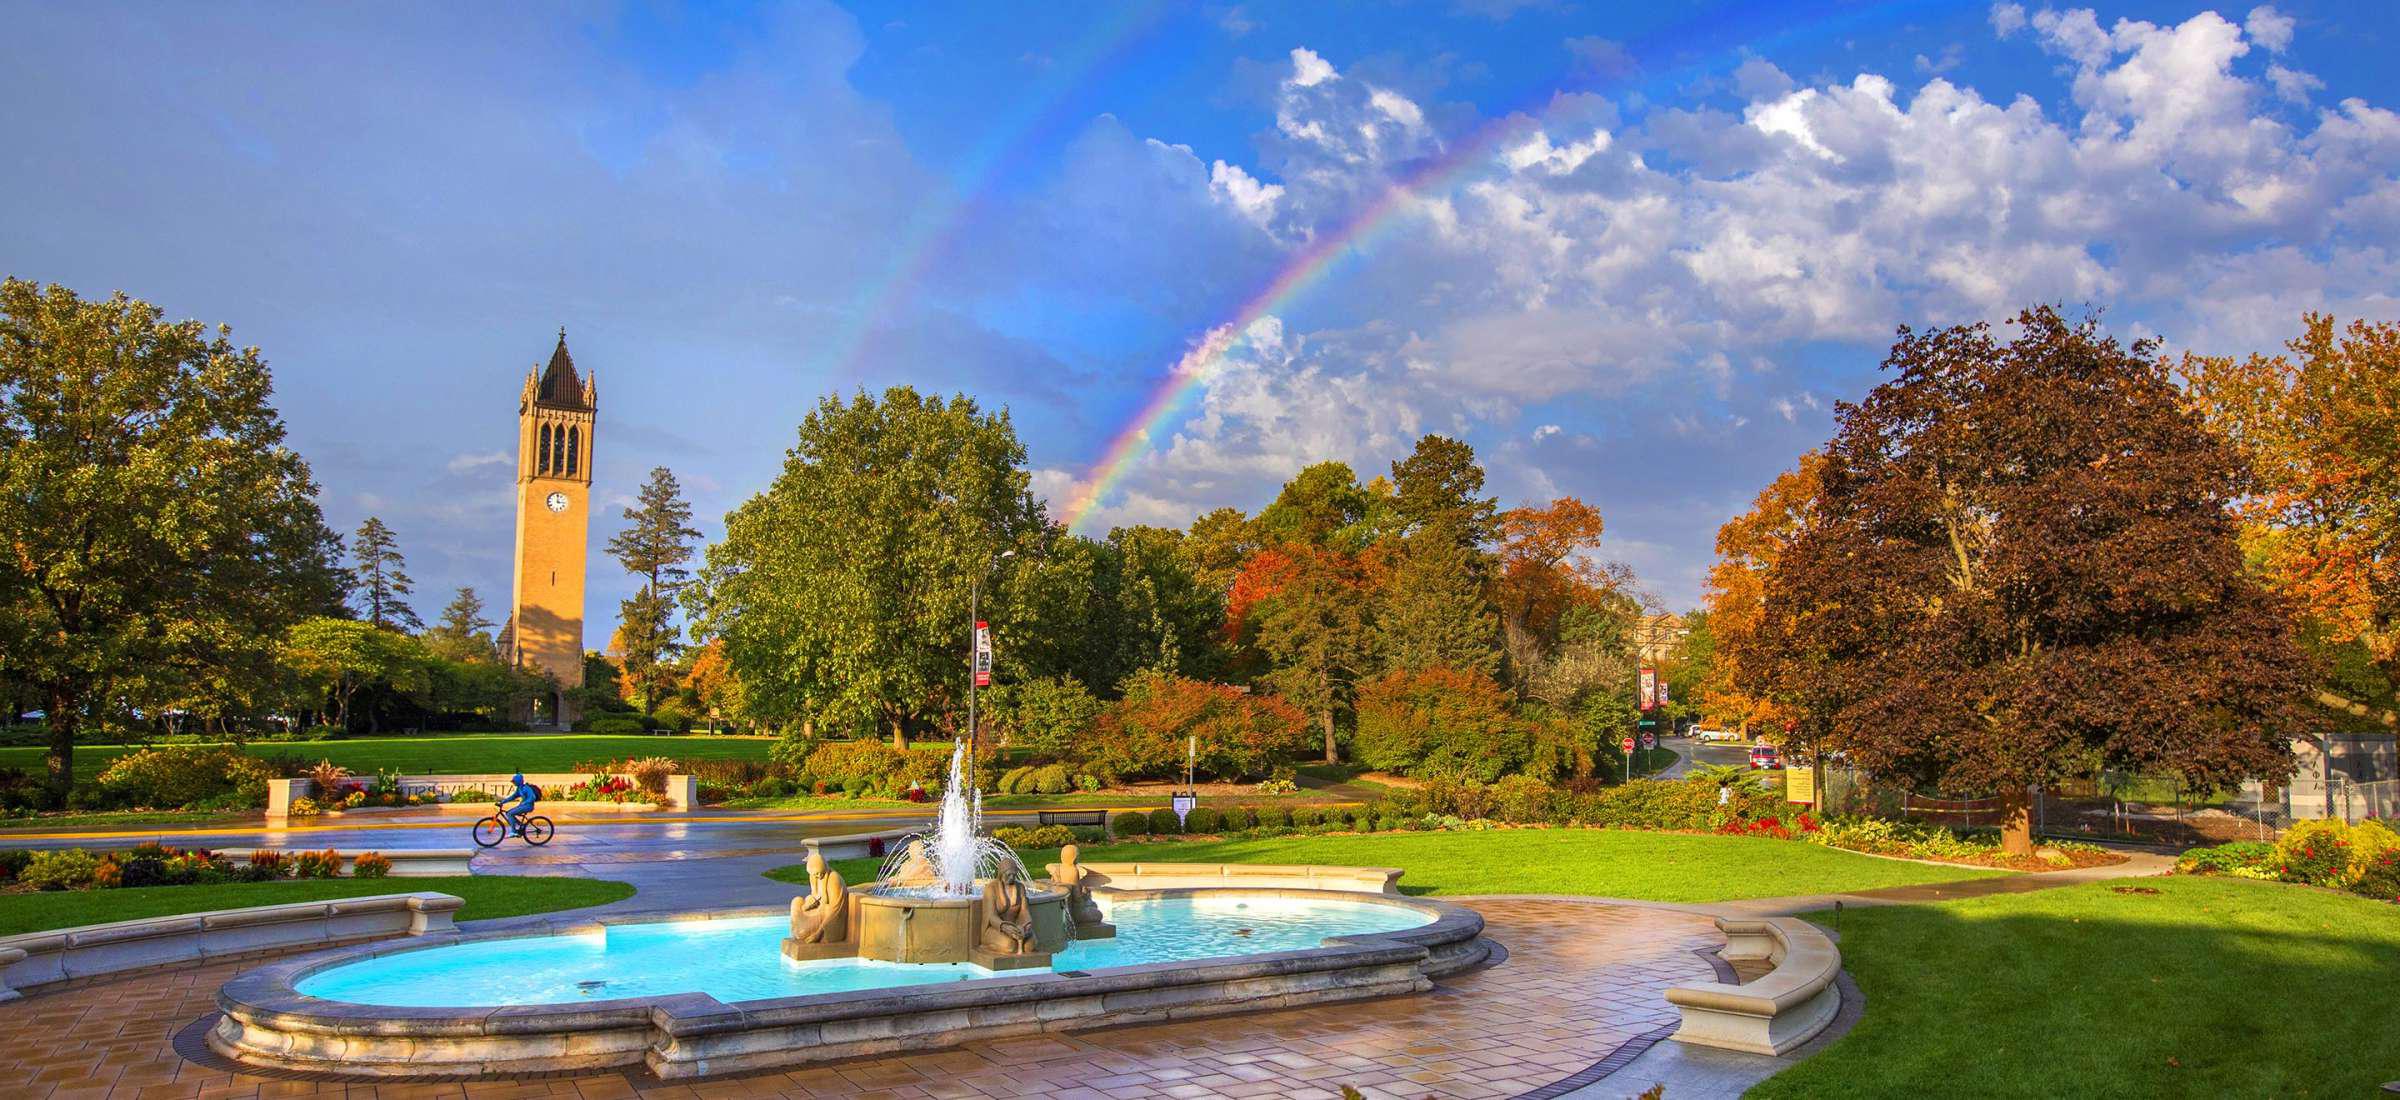 喷泉和钟楼的观点与双彩虹背景